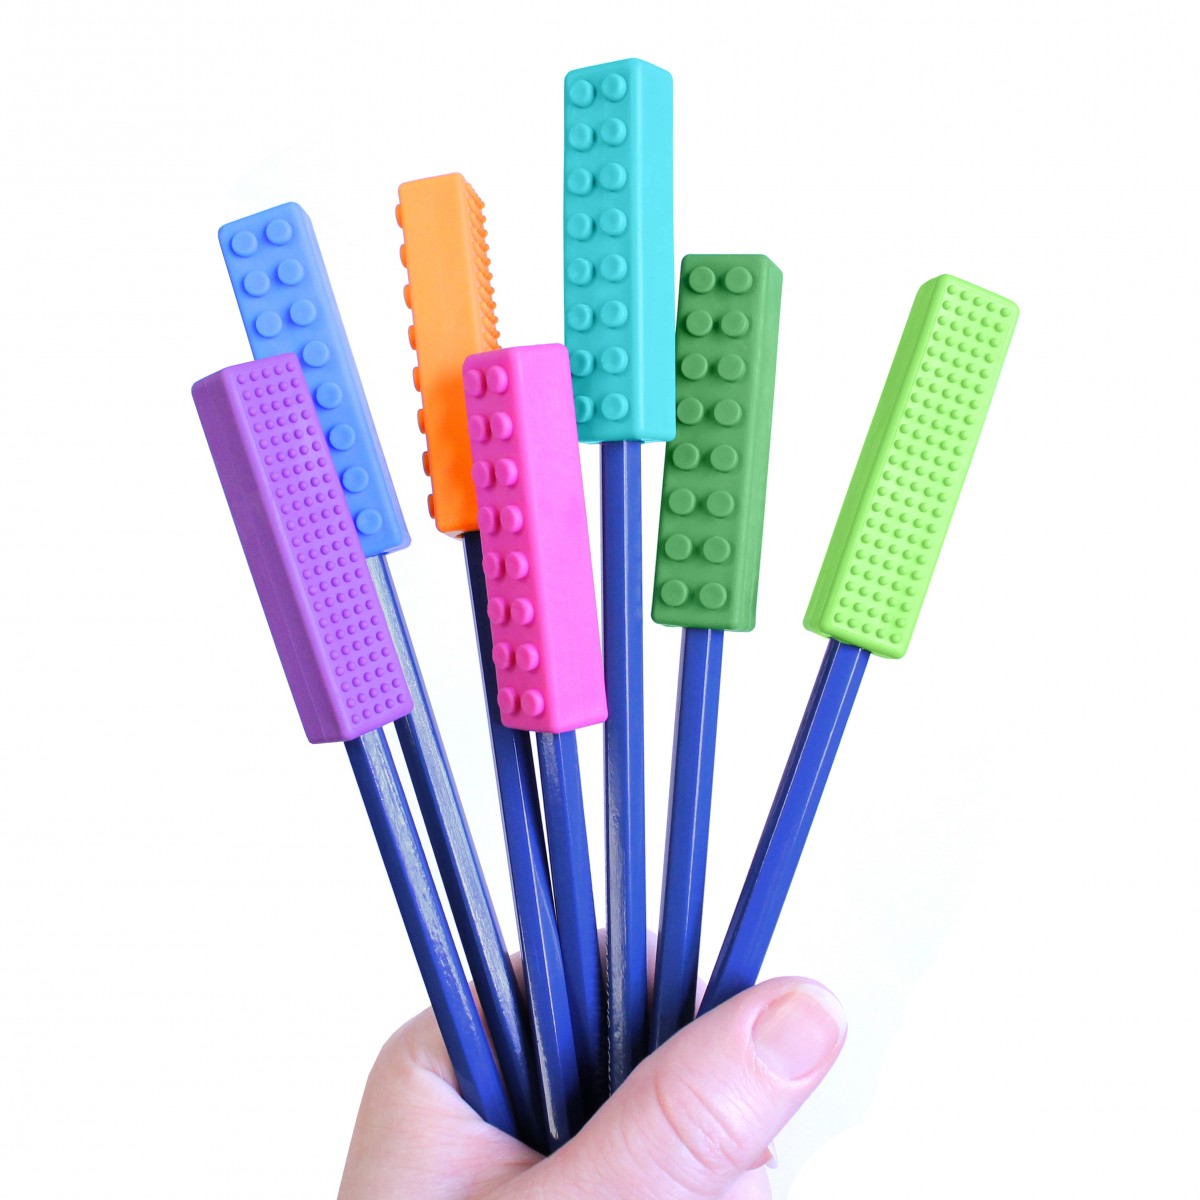 Bündel mit verschiedenfarbigen Stiften, die mit Brick-Aufsätzen ausgestattet sind